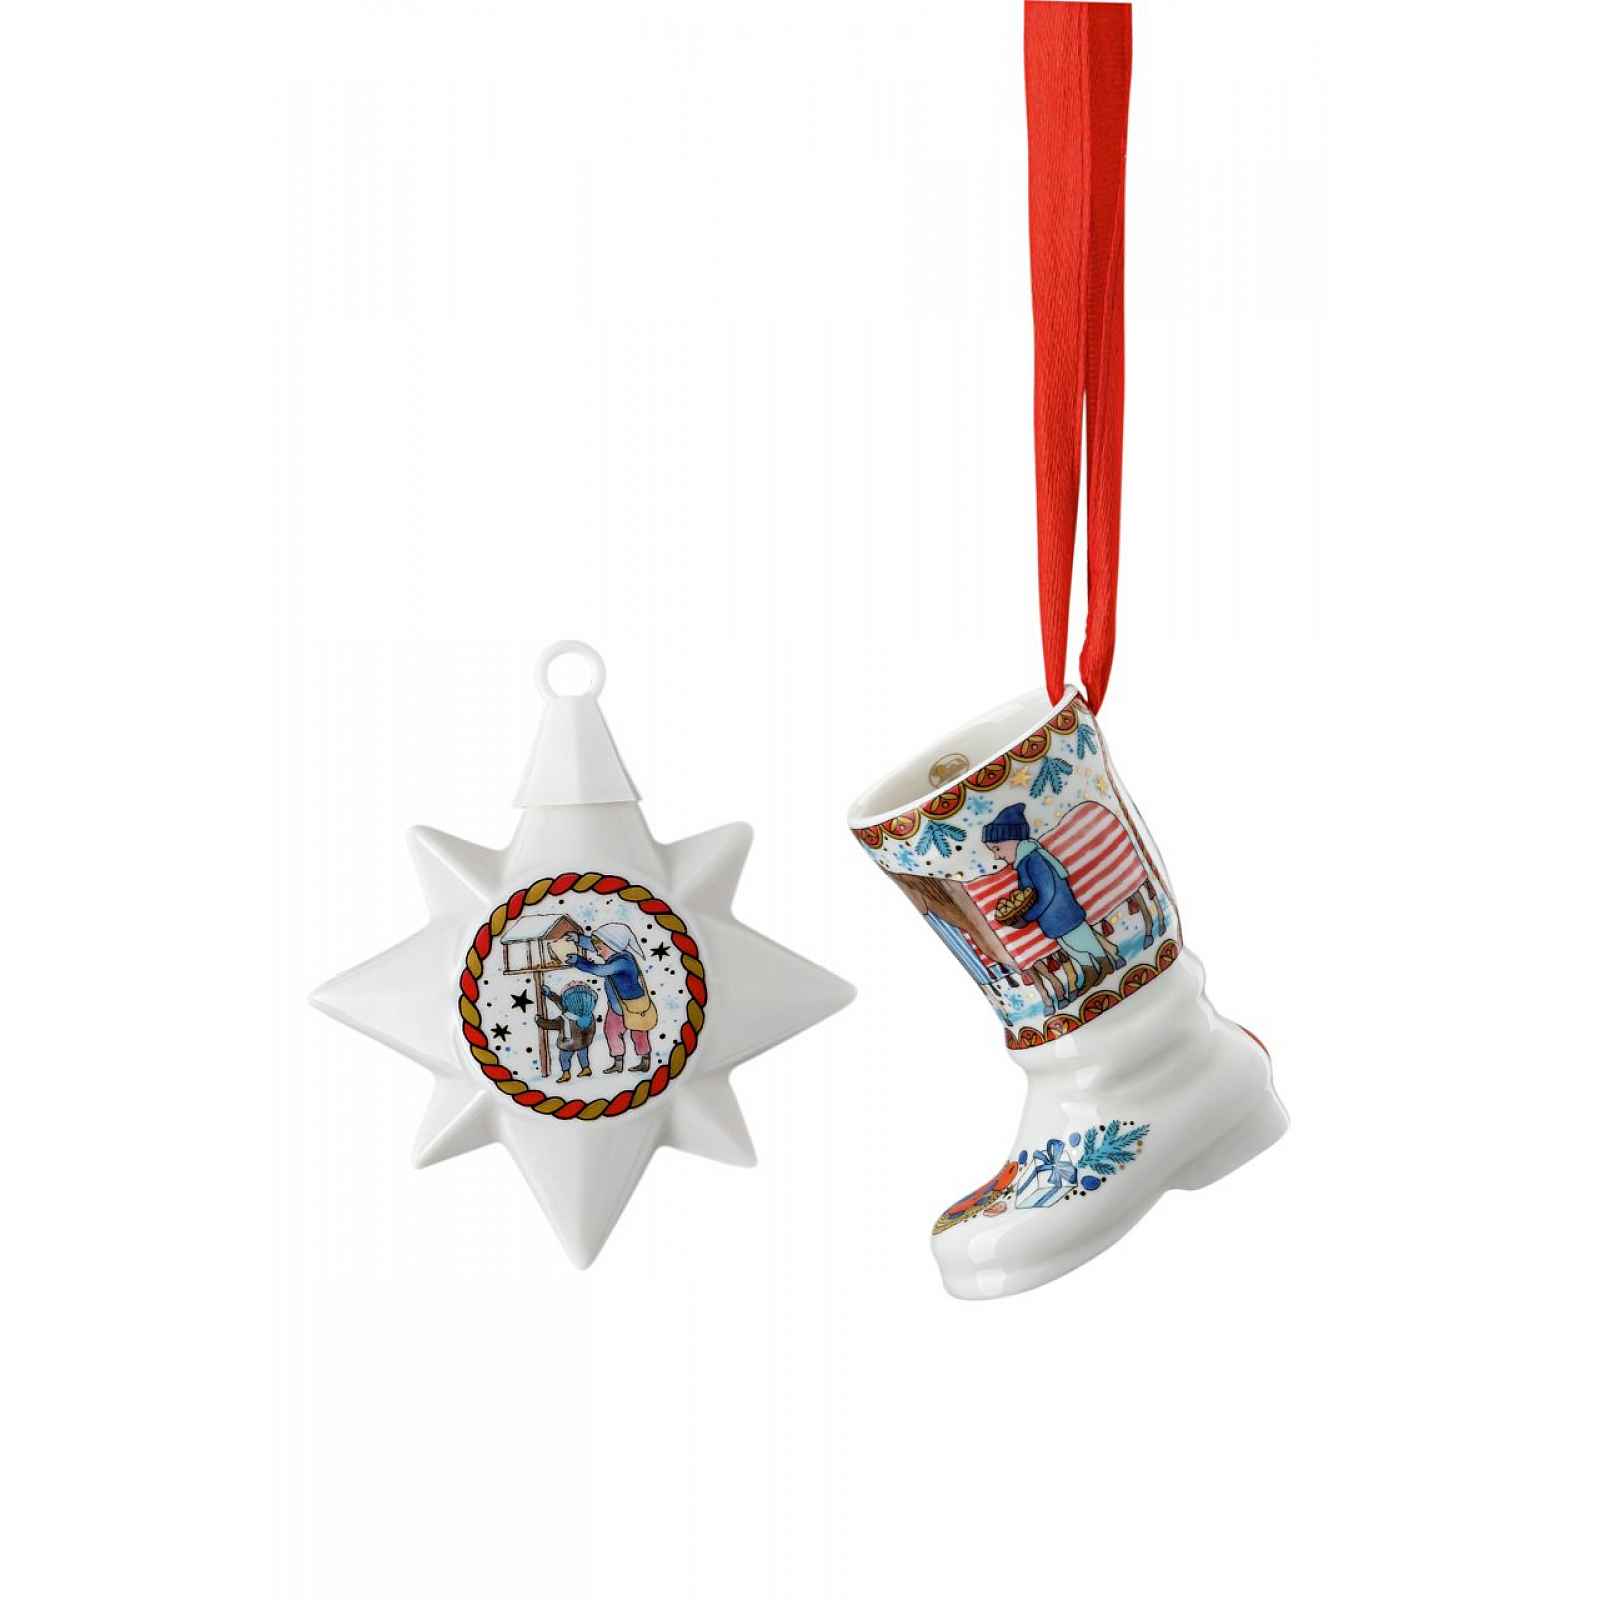 Rosenthal Vánoční set porcelánová mini hvězda a mini botička, Vánoční dárky, limitka